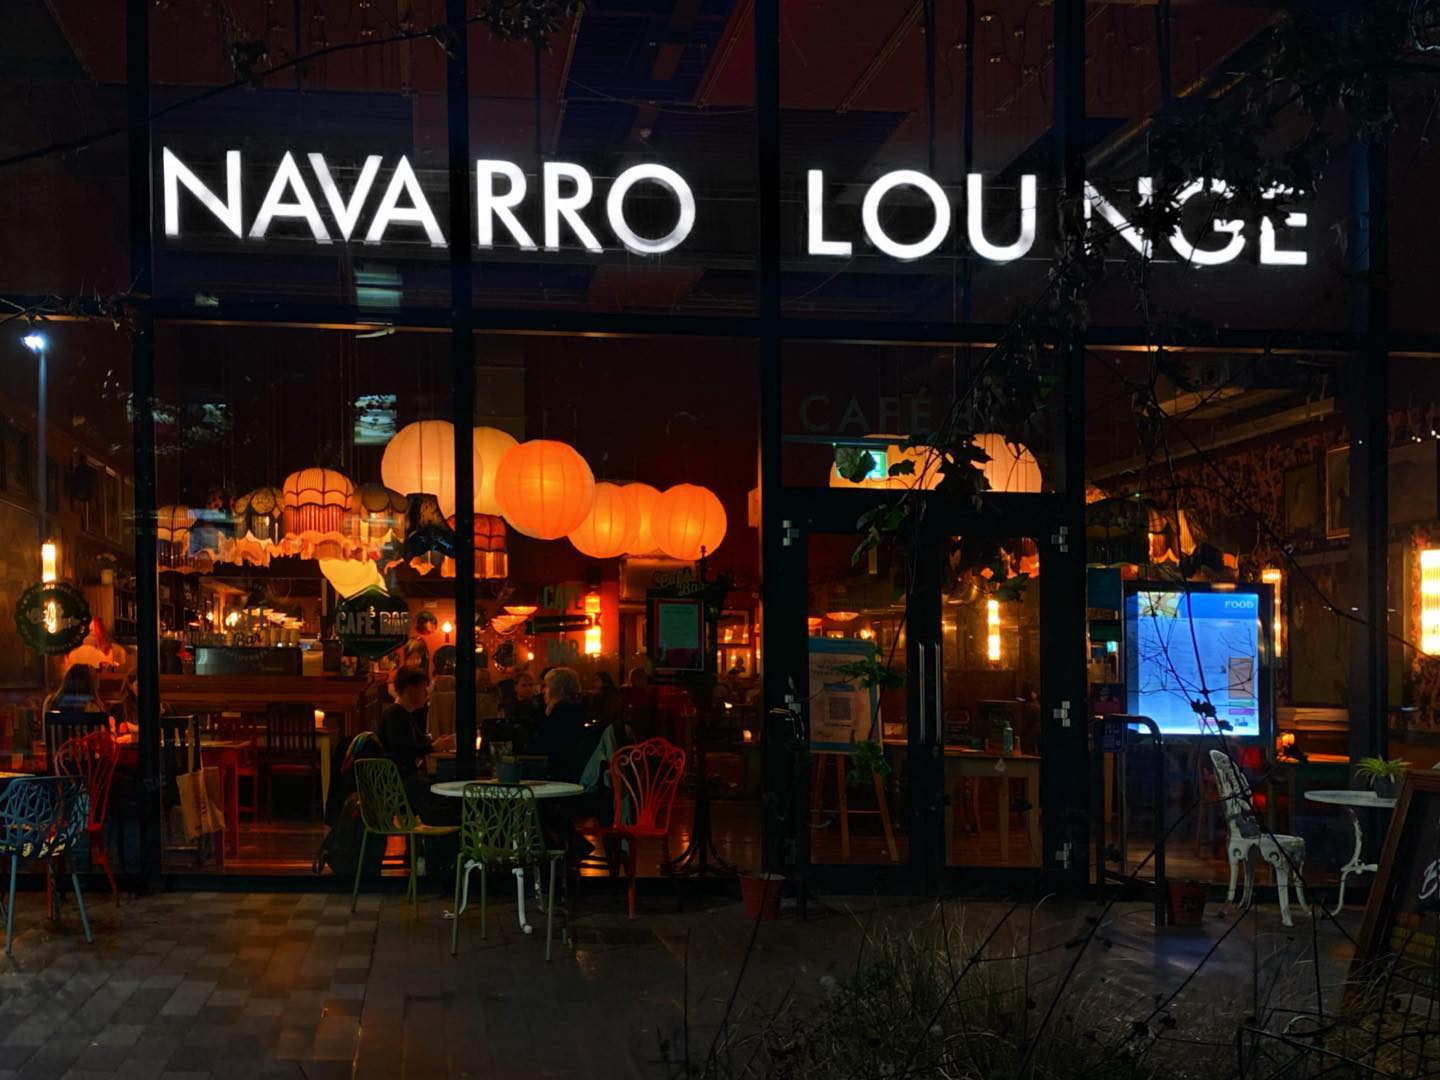 External image of Navarro Lounge at night